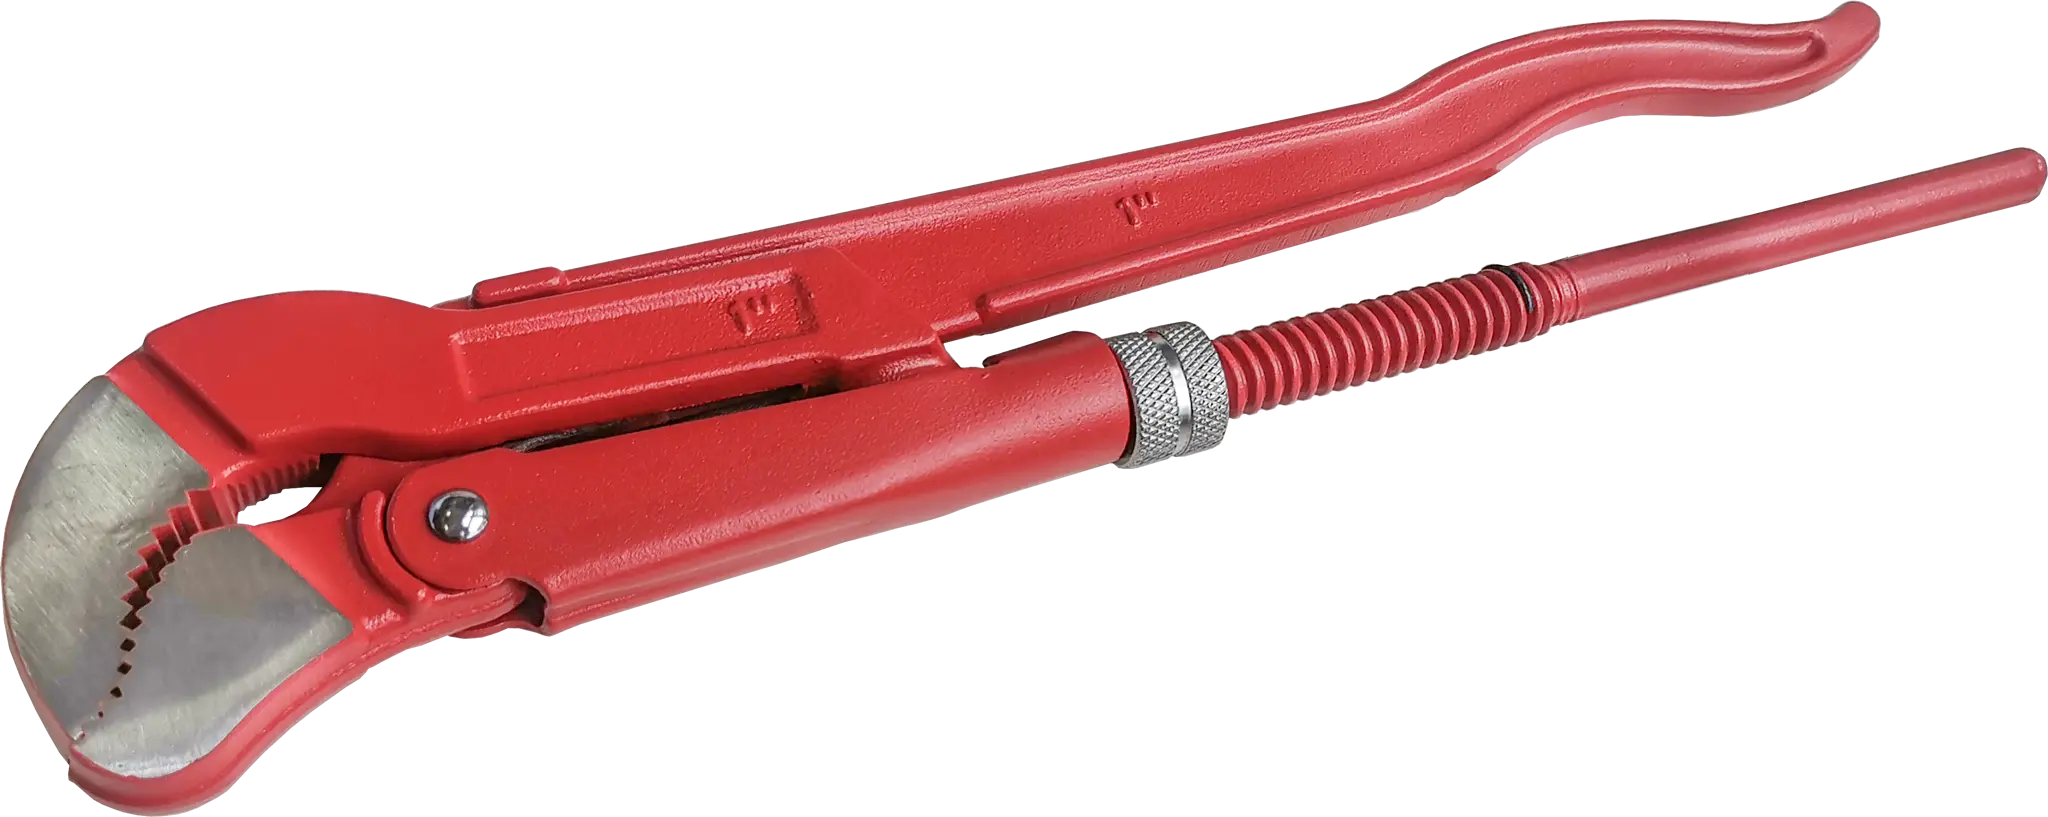 Ключ трубный газовый рычажный S 1045.0254 захват 25 мм, длина 320 мм усиленный трубный ключ стилсона king tony